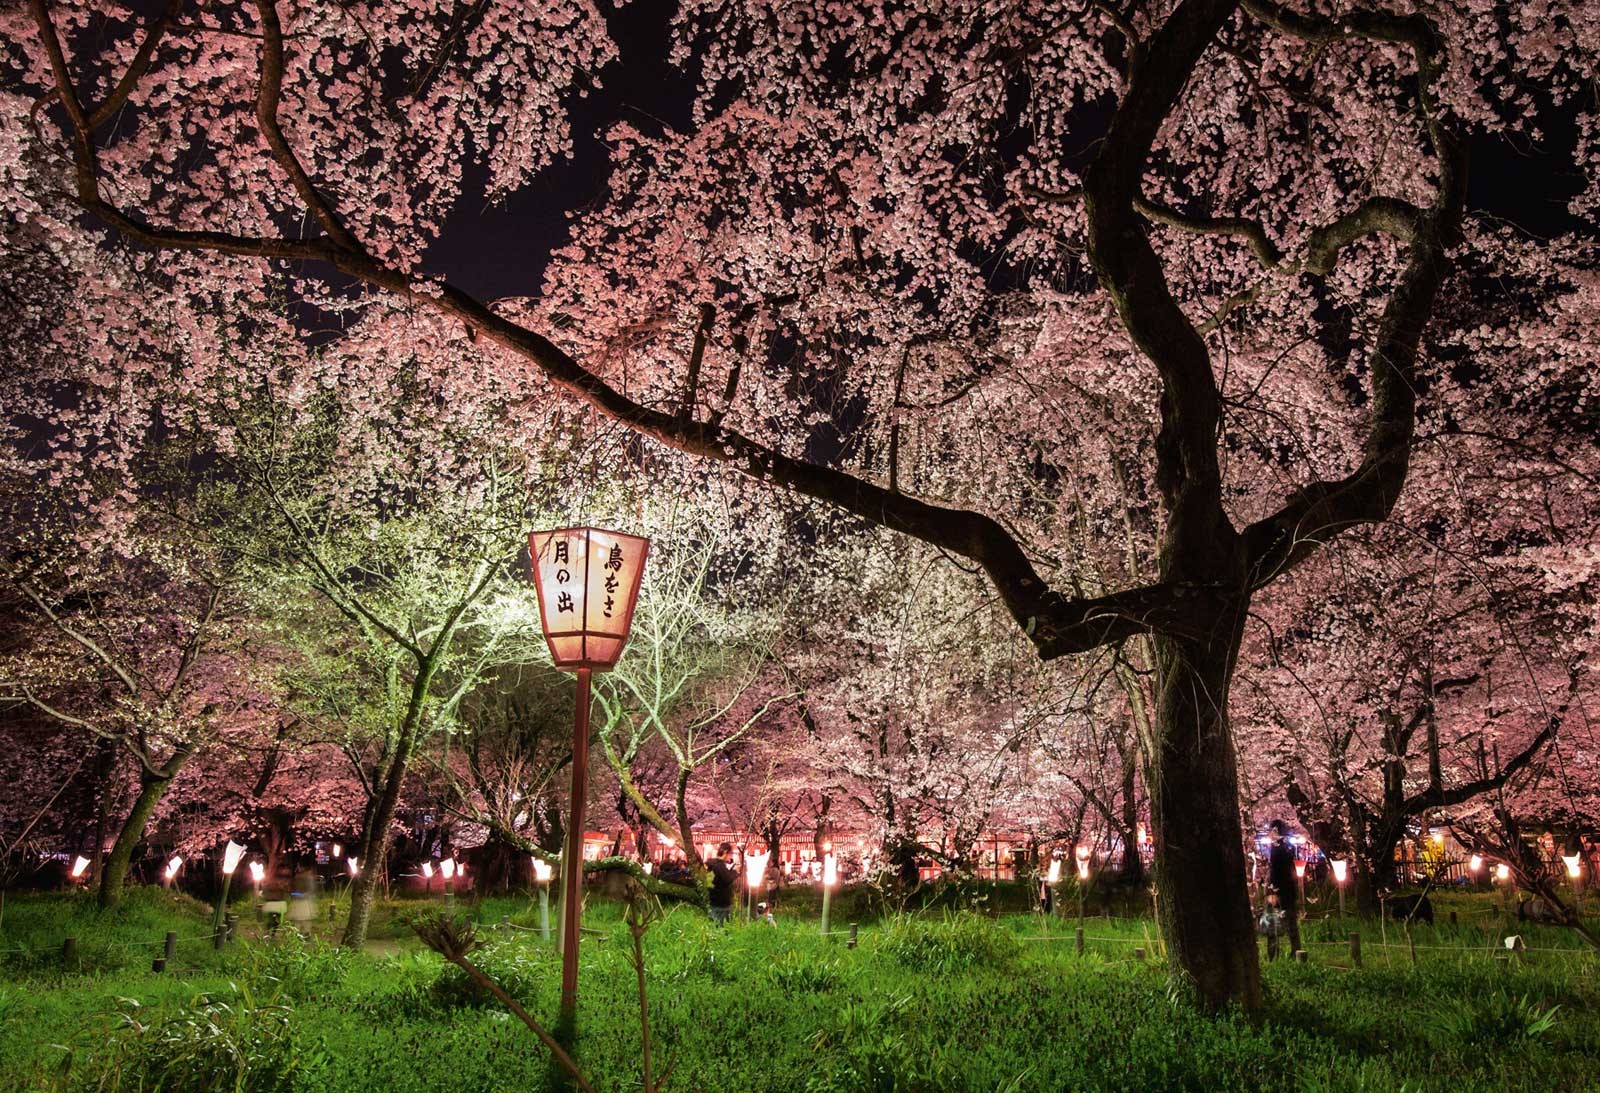 تصویر شکوفه های گیلاس ژاپن در شب زیبا برای Instagram